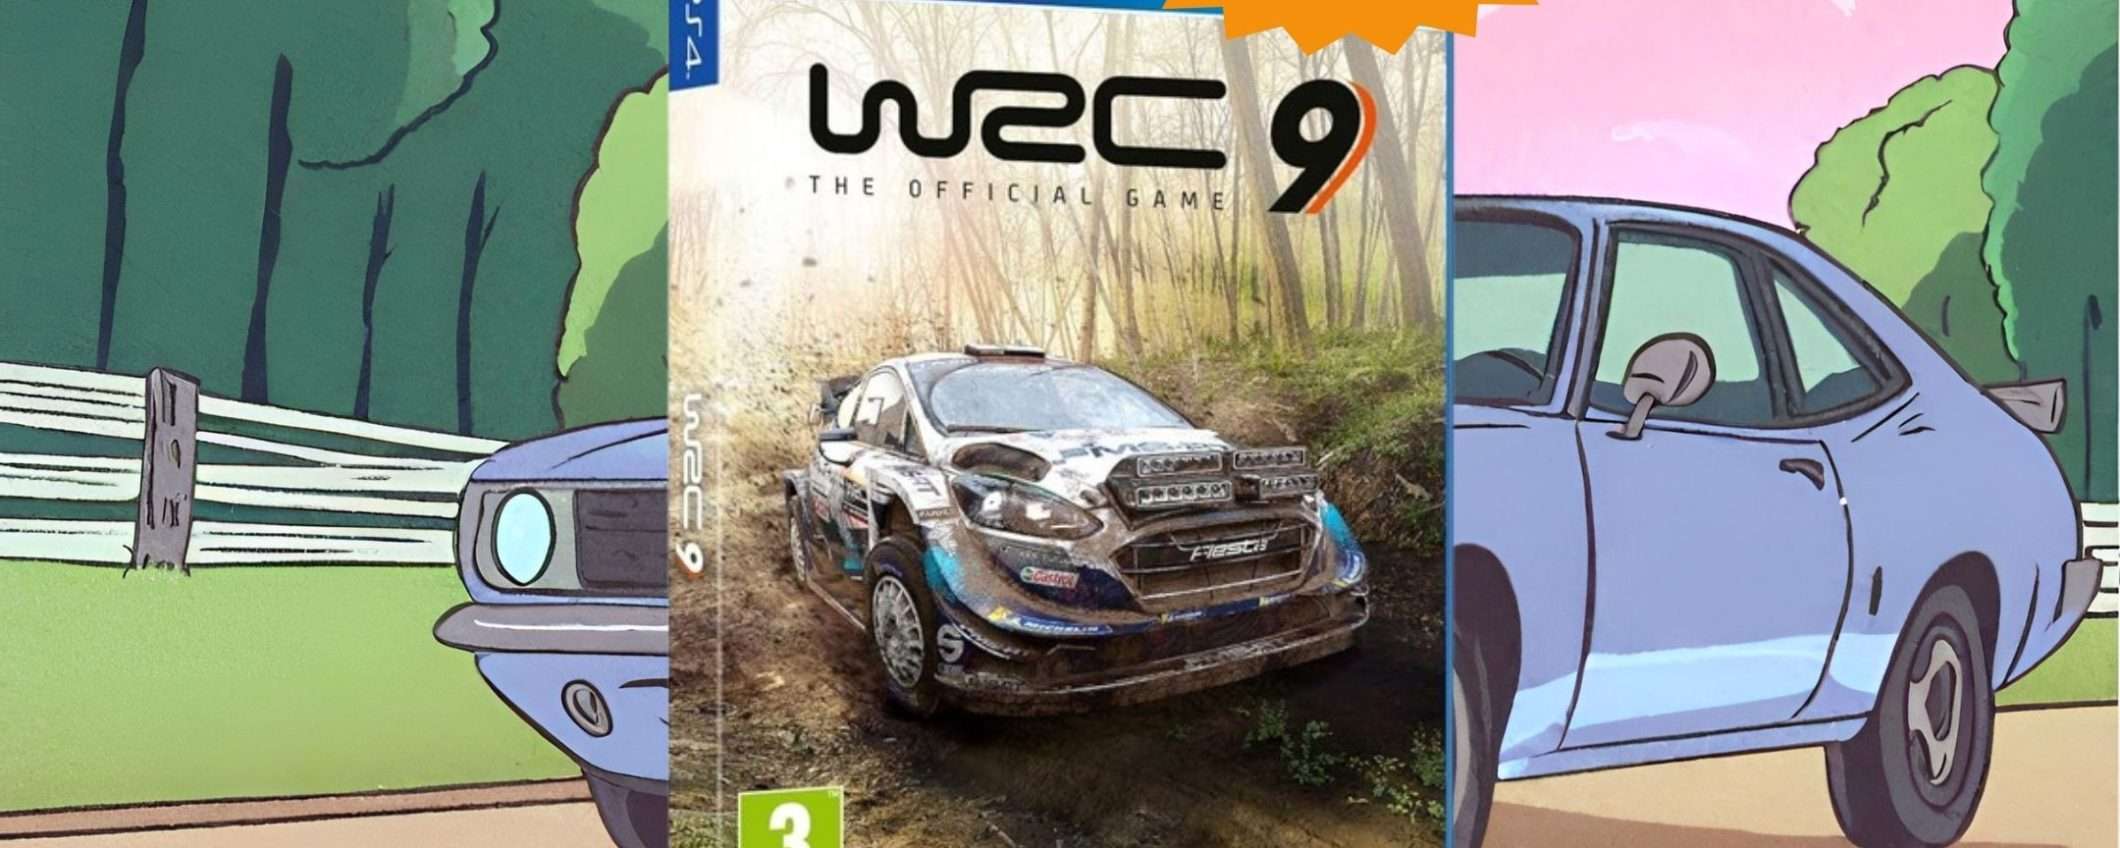 WRC 9 per PS4: CROLLO del prezzo su Amazon (-75%)